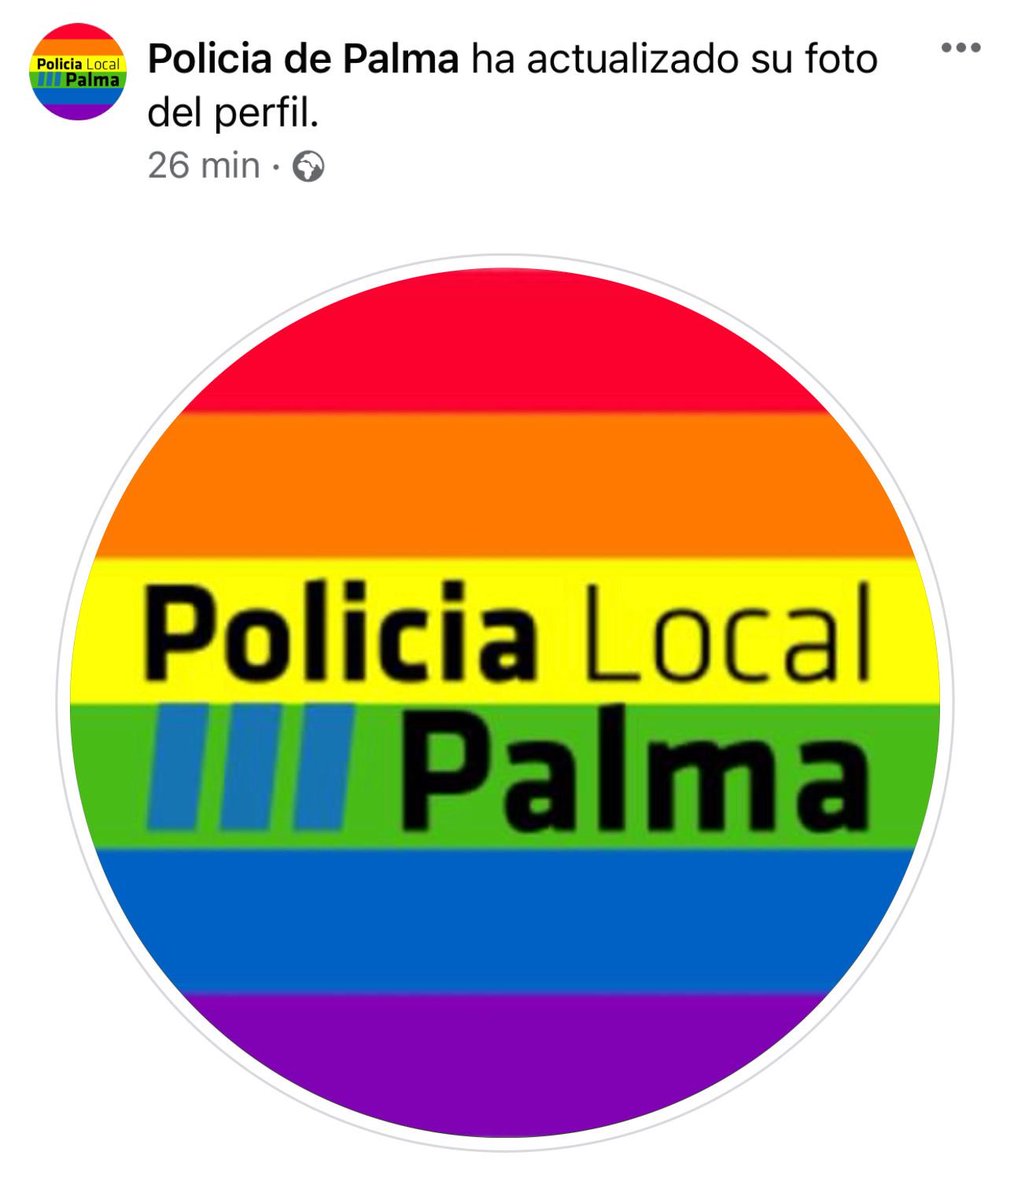 Por qué? No entiendo como es posible que se le permita a la Policía de Palma este tipo de acciones.
#TeamVox 
#LevantandoEspaña 
#23Julio